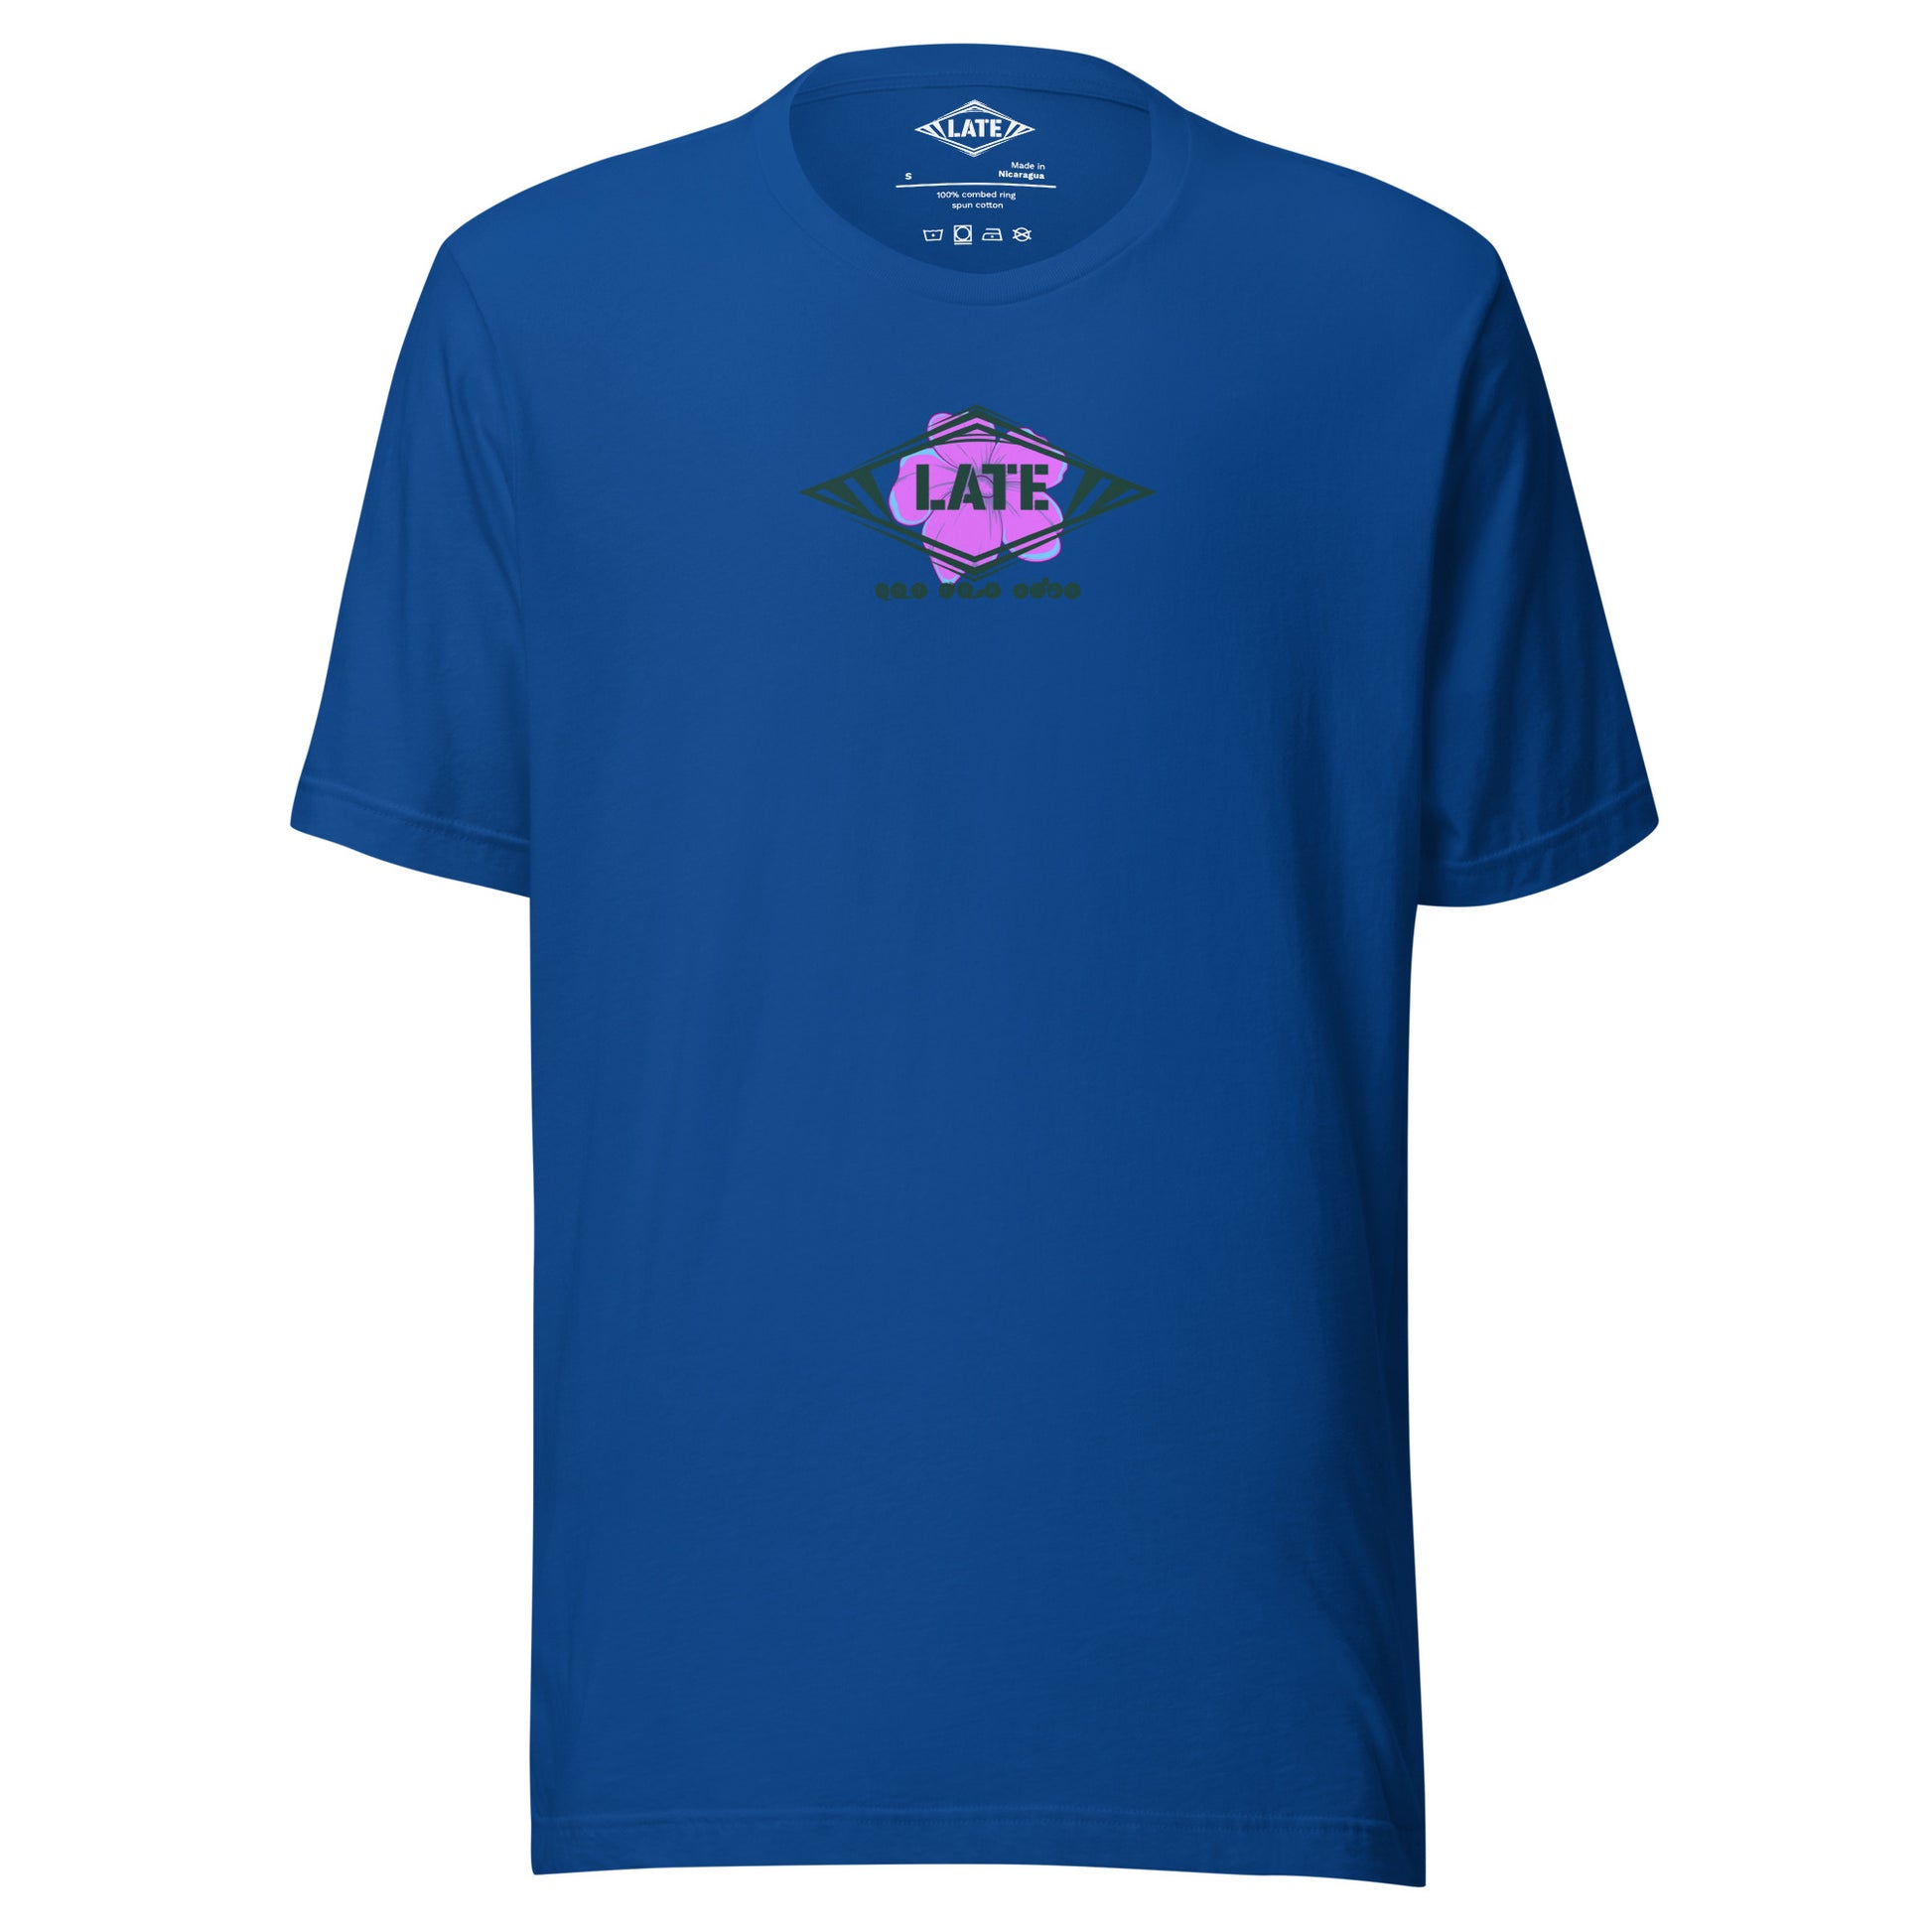 T-Shirt skate dark psychédélique de face avec motif floral texte not for kids t-shirt unisex de couleur bleu royal